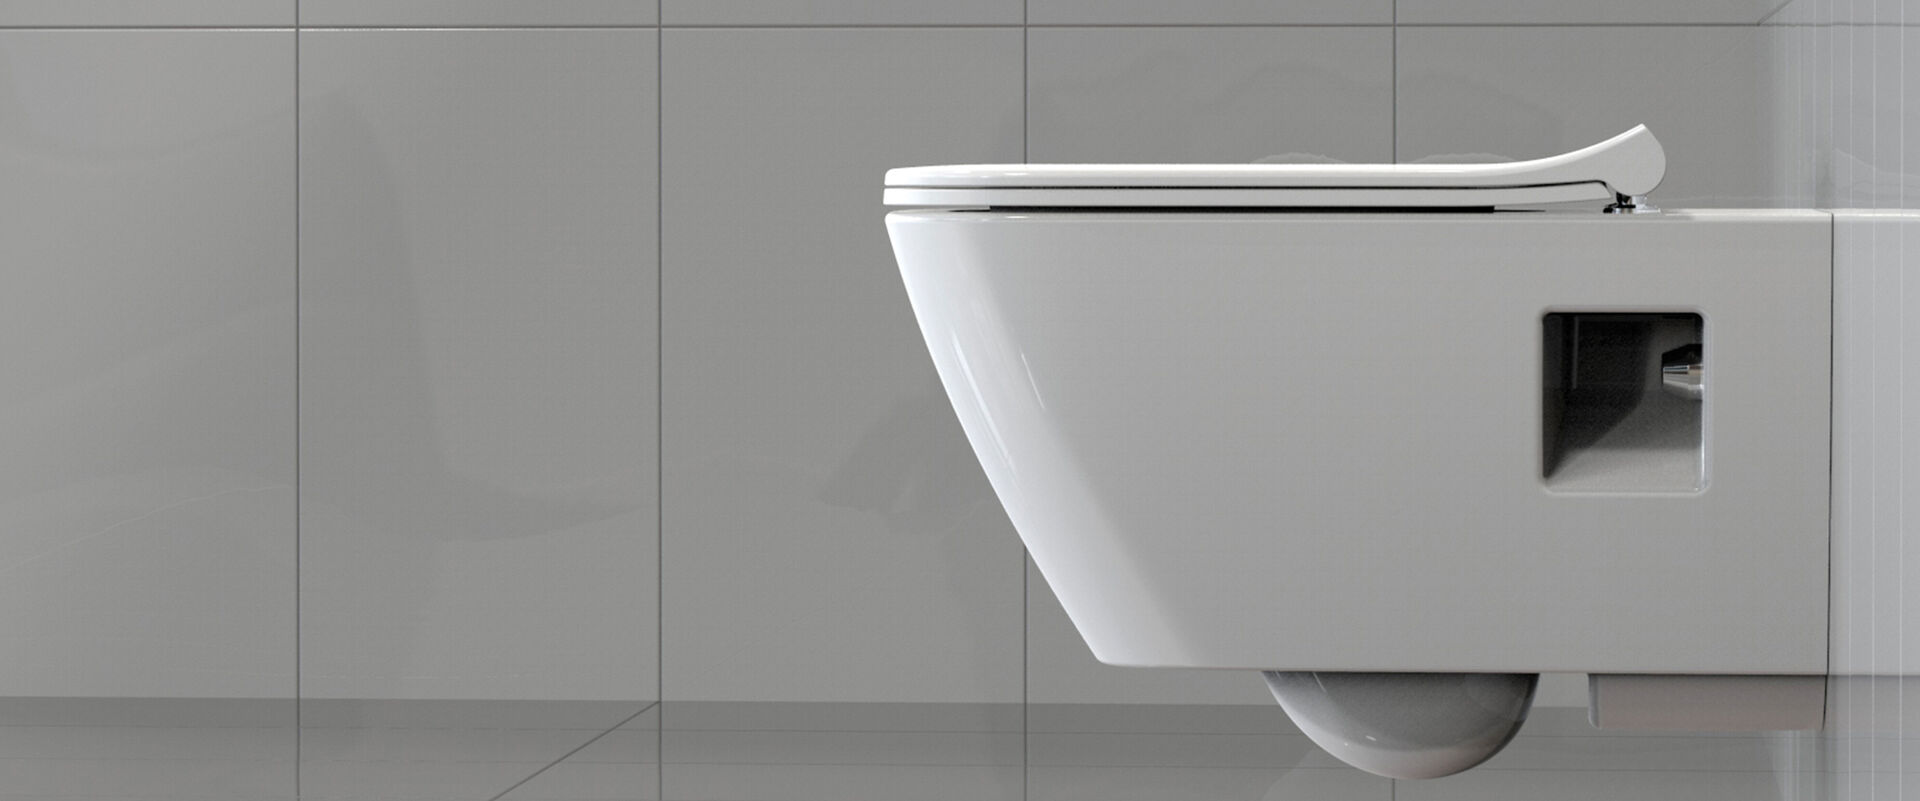 Ultraflacher WC-Sitz Slim, der auf einer weißen Toilette montiert ist.